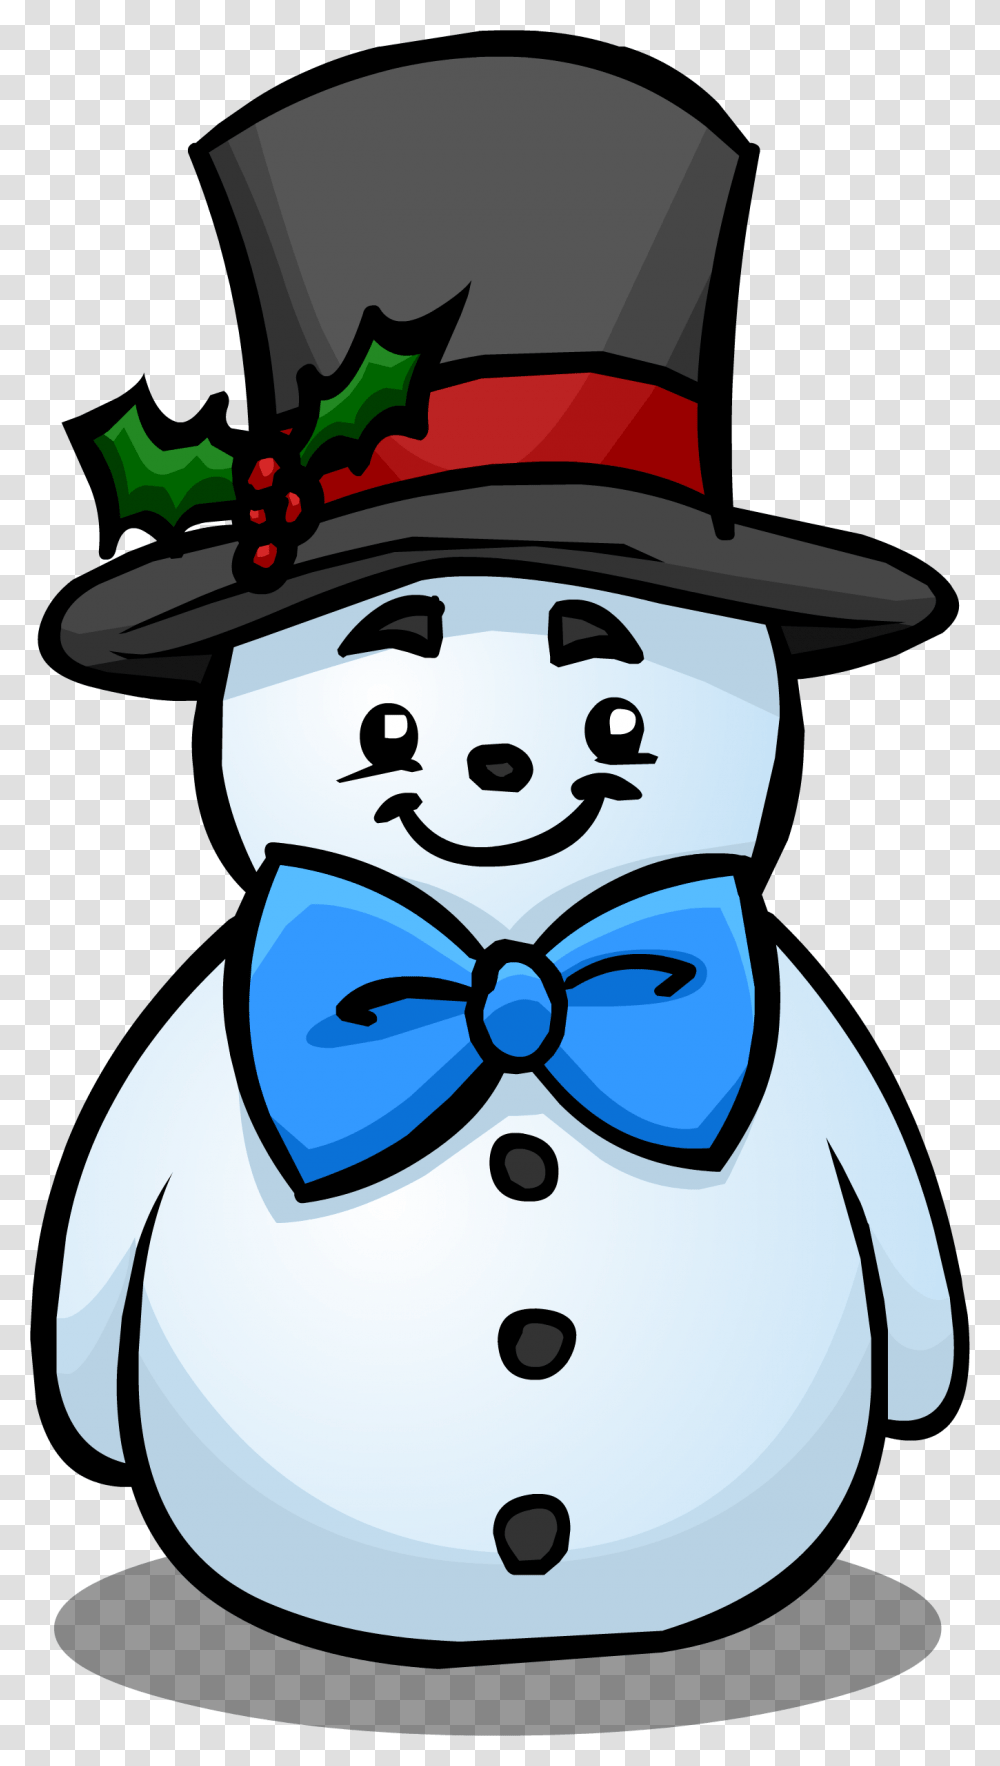 Top Snowman Club Penguin Top Hat For A Snowman, Tie, Accessories, Accessory, Necktie Transparent Png